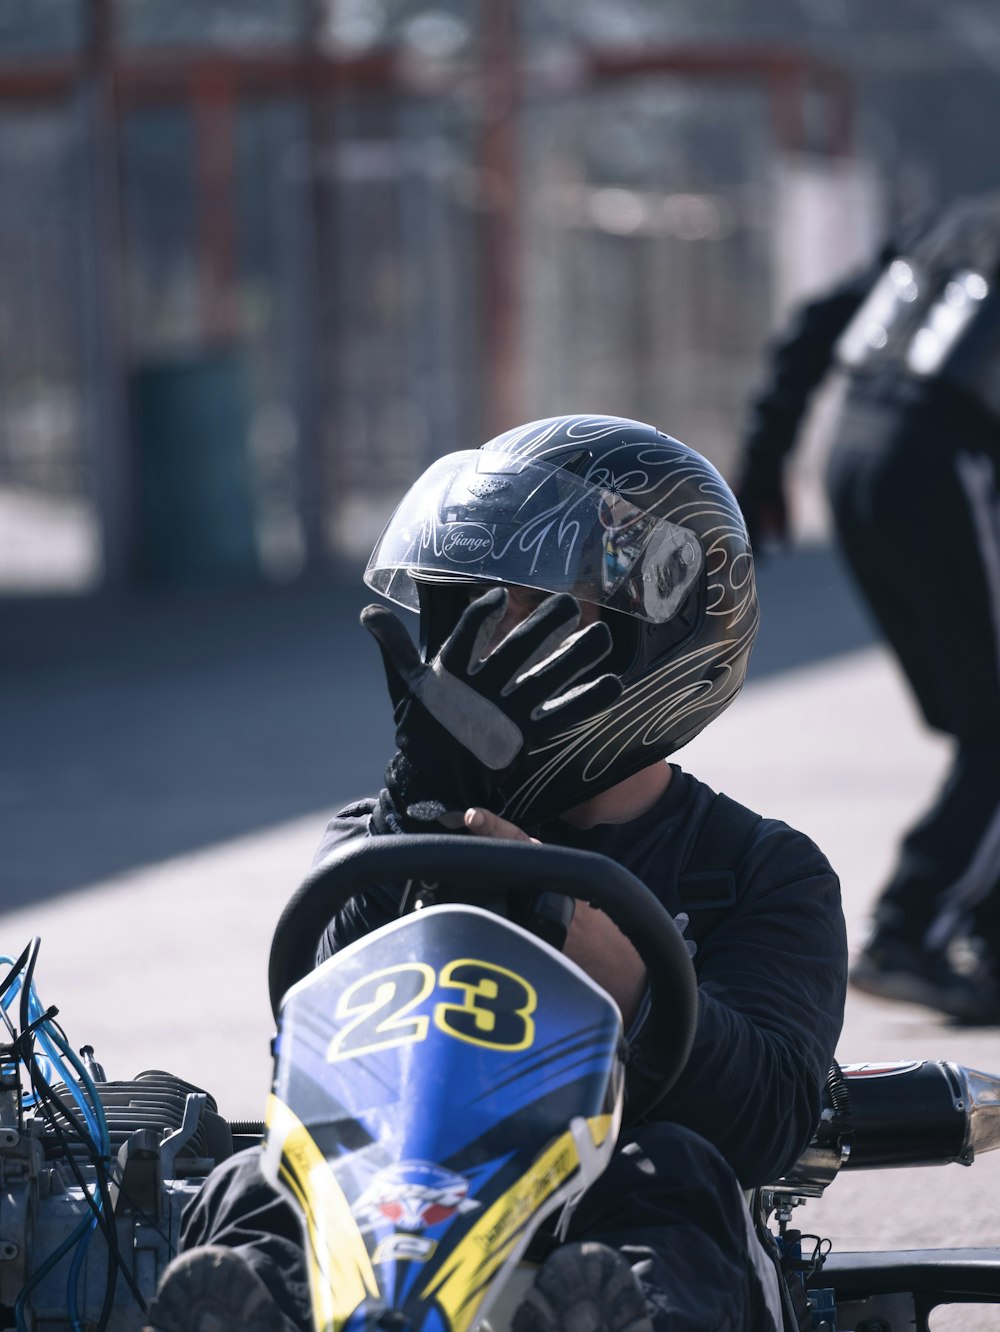 una persona con casco y montando una motocicleta